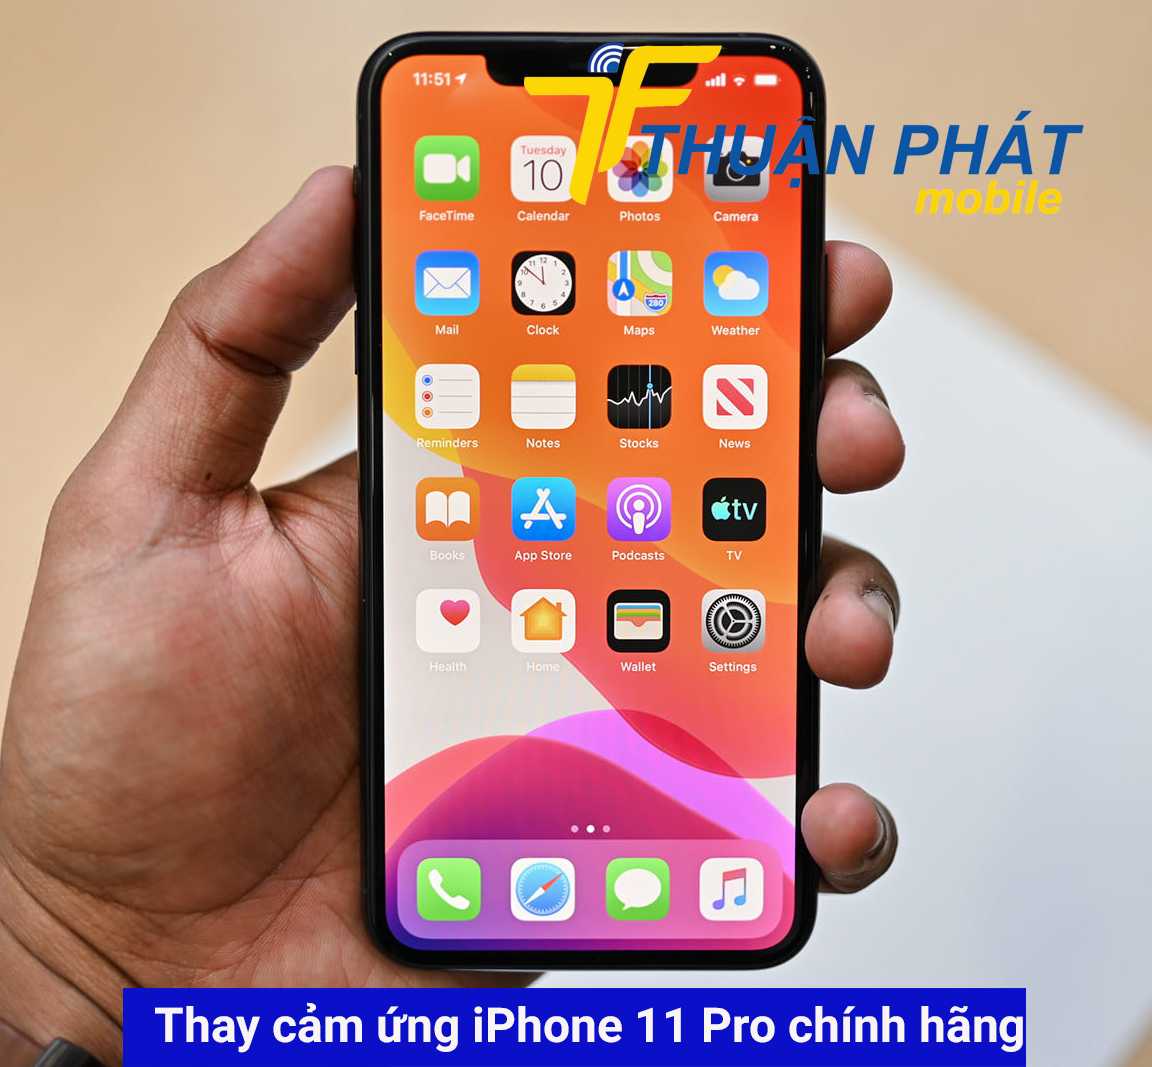 Thay cảm ứng iPhone 11 Pro chính hãng tại Thuận Phát Mobile